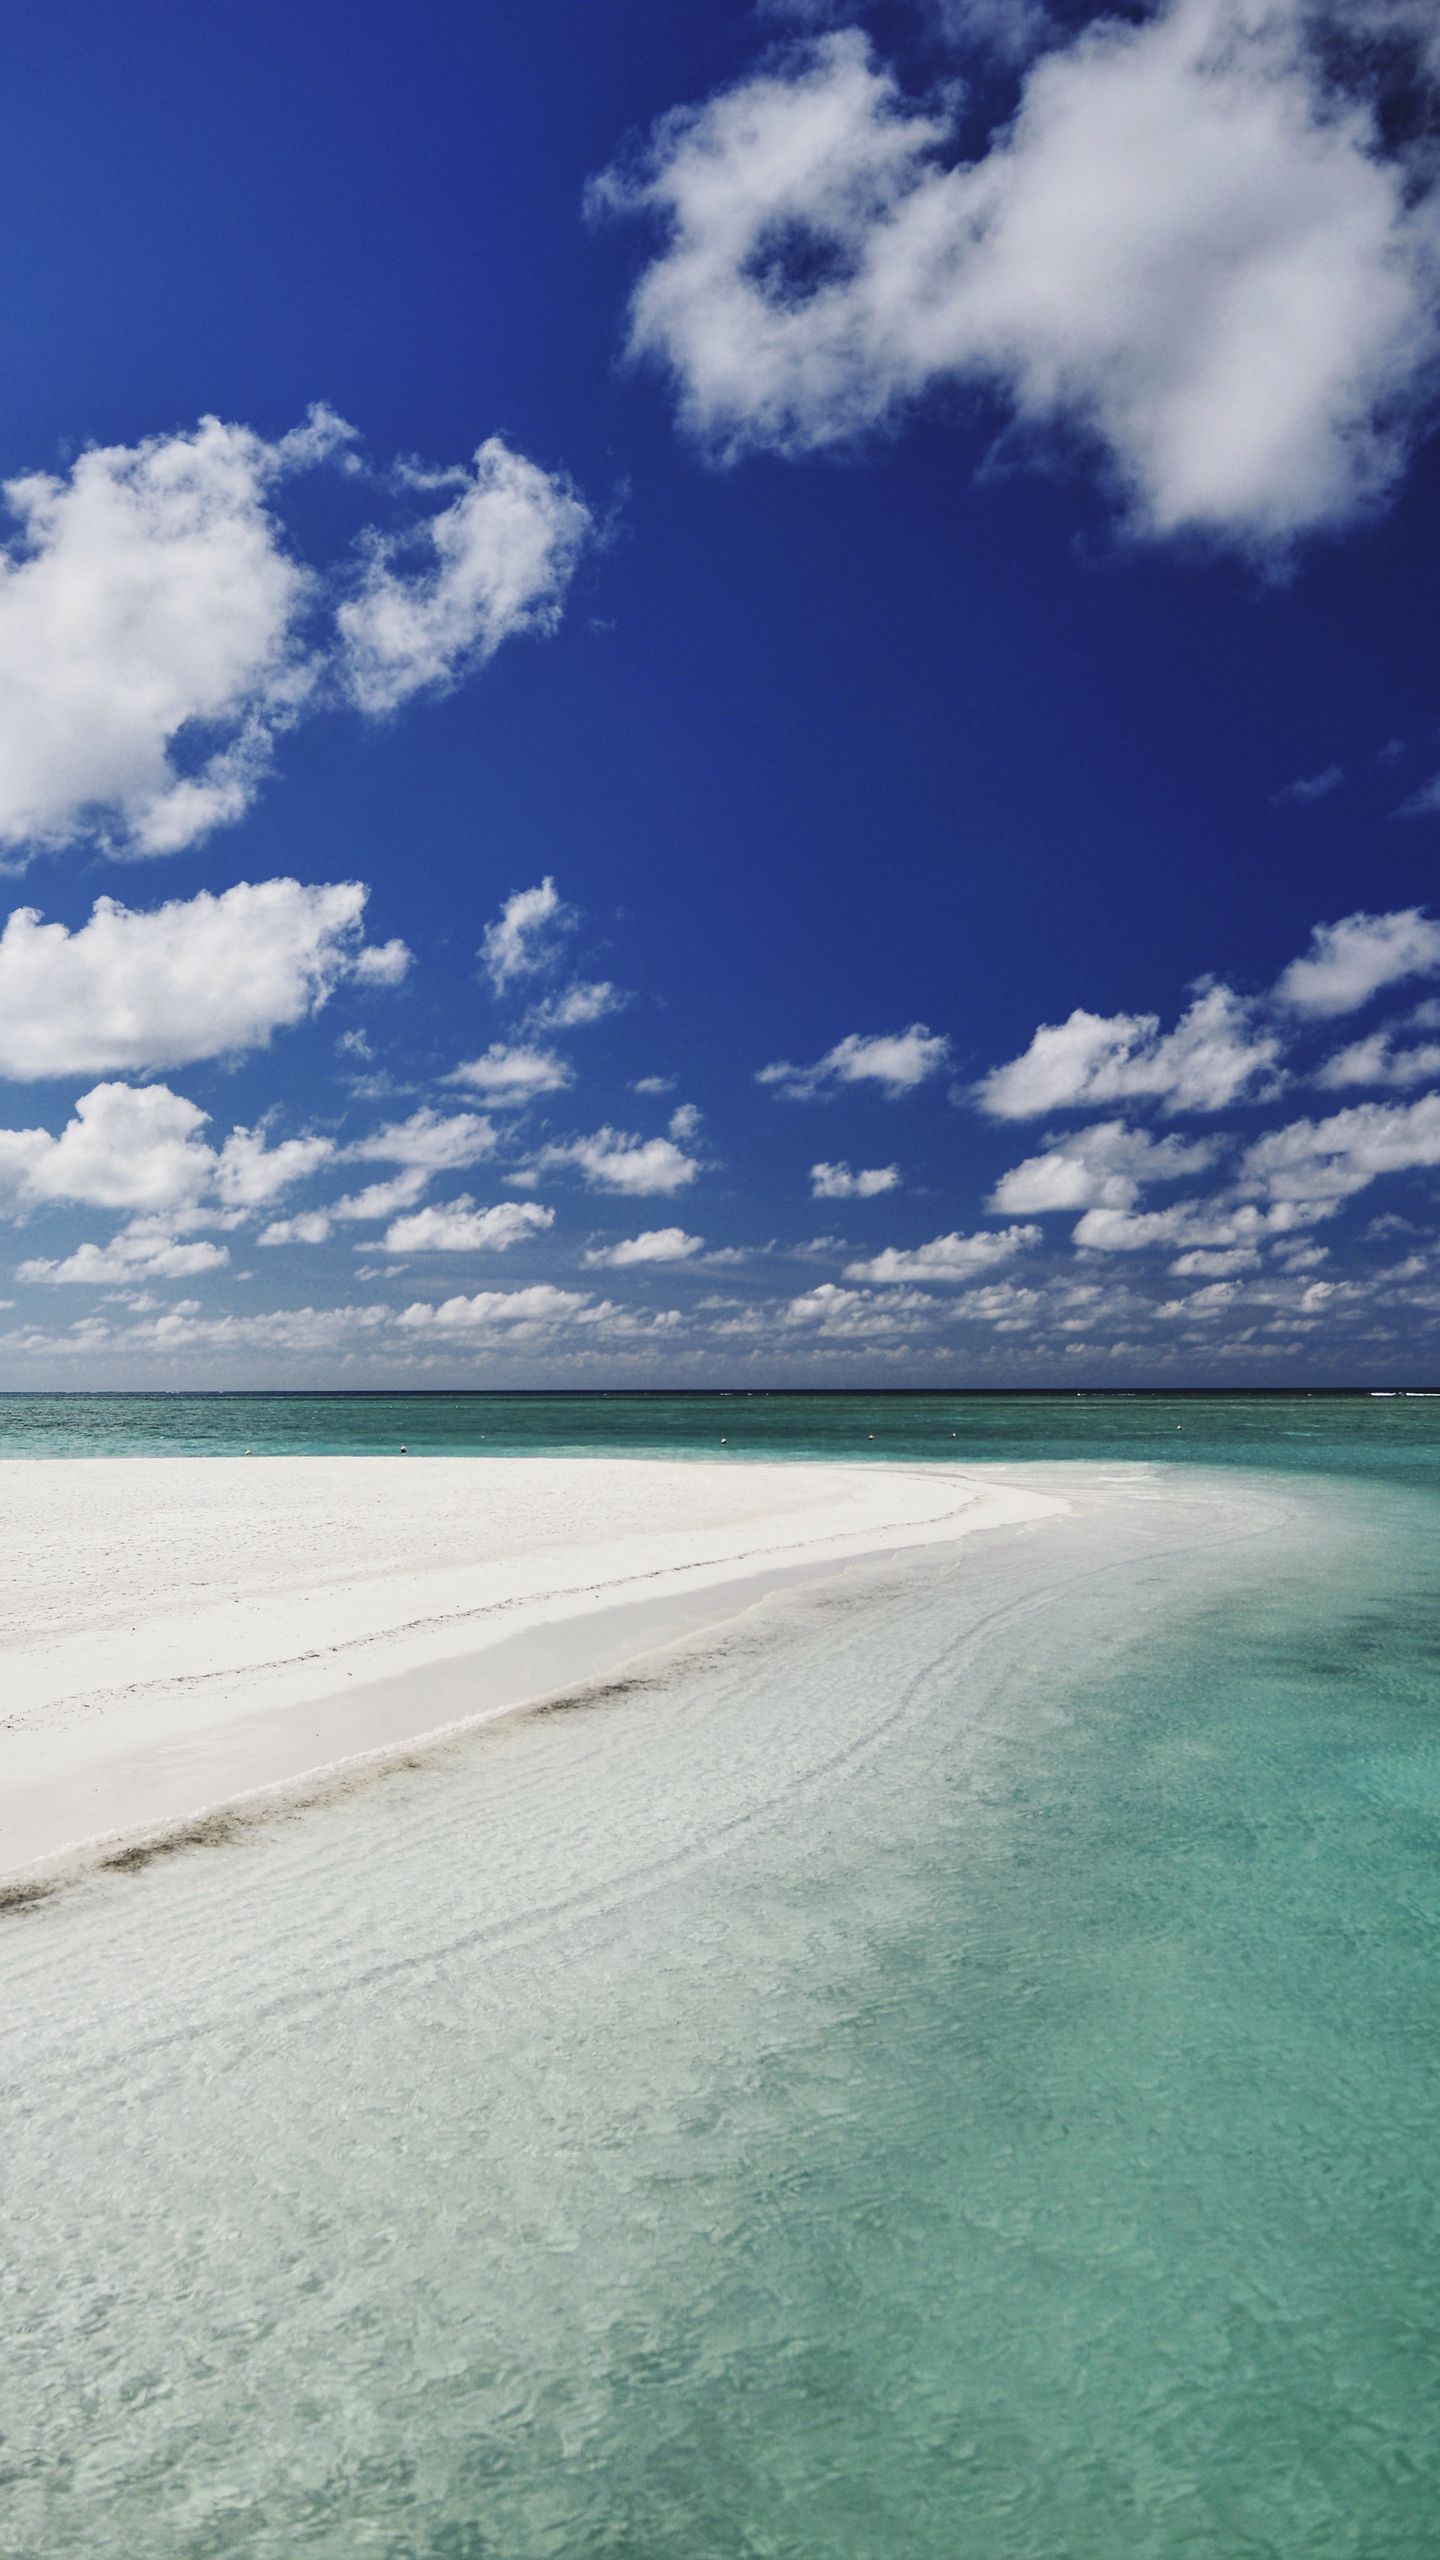 Hình nền đảo nhiệt đới sẽ mang đến cho bạn cảm giác thư giãn và tận hưởng không khí ấm áp trong không gian lành mạnh, trong lành của đảo nhiệt đới. Bức ảnh sẽ giúp bạn tưởng tượng đến những buổi chiều dài đầy nắng và những bãi cát trắng tuyệt đẹp. Bạn sẽ rất muốn tìm đến đó để tận hưởng giây phút thư giãn.